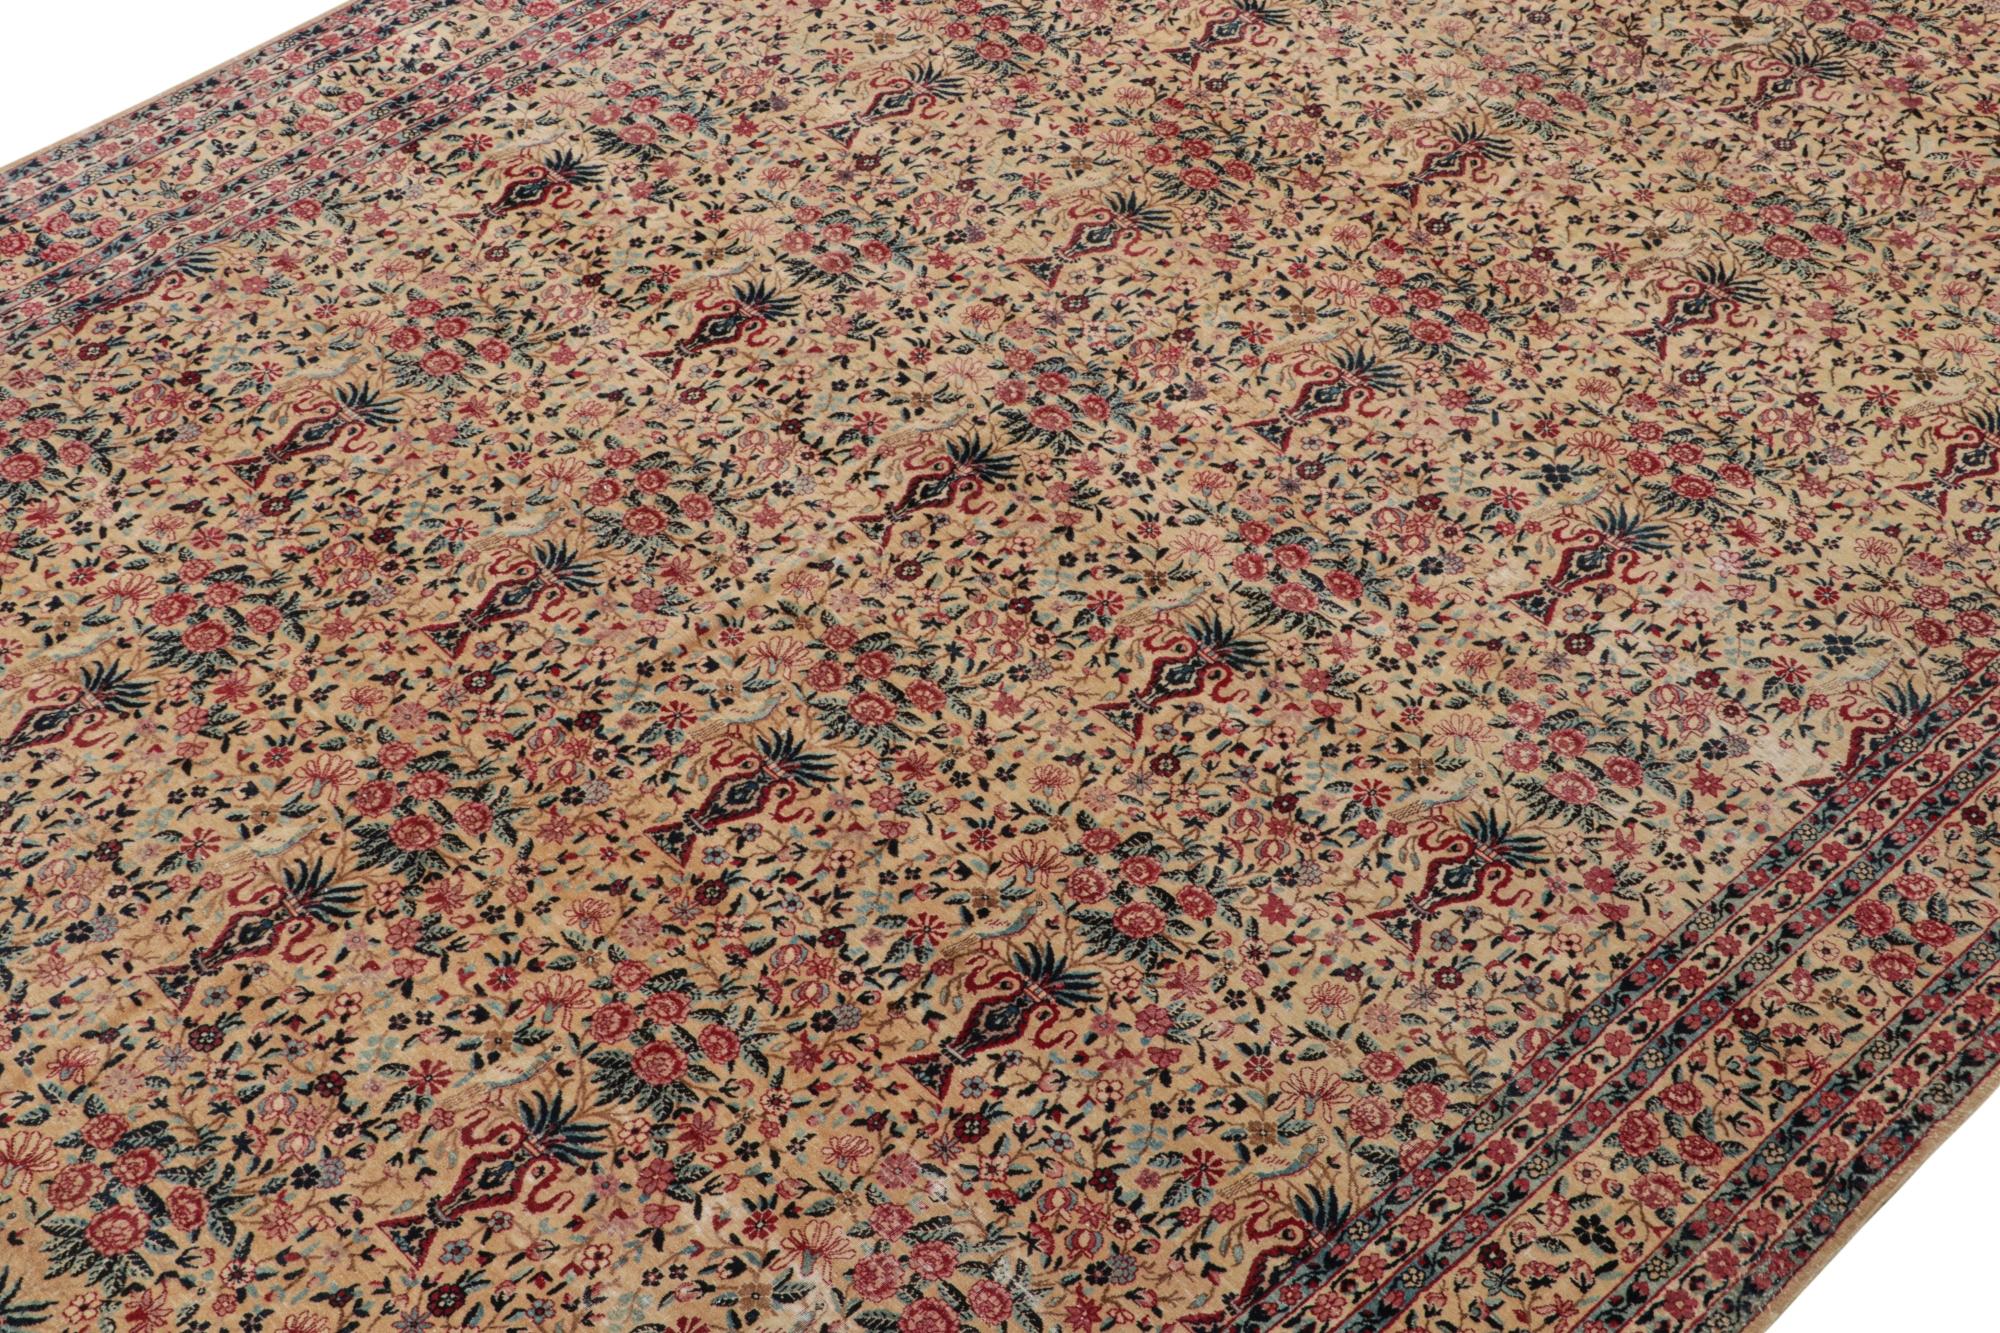 Noué à la main en laine vers 1910-1920, ce tapis persan ancien 9x17 est une rare pièce de signature de la provenance de Kerman Lavar - nouvellement conservée par Rug & Kilim.

Sur le Design/One : 

Ce tapis est une pièce rare de Costikyan avec un